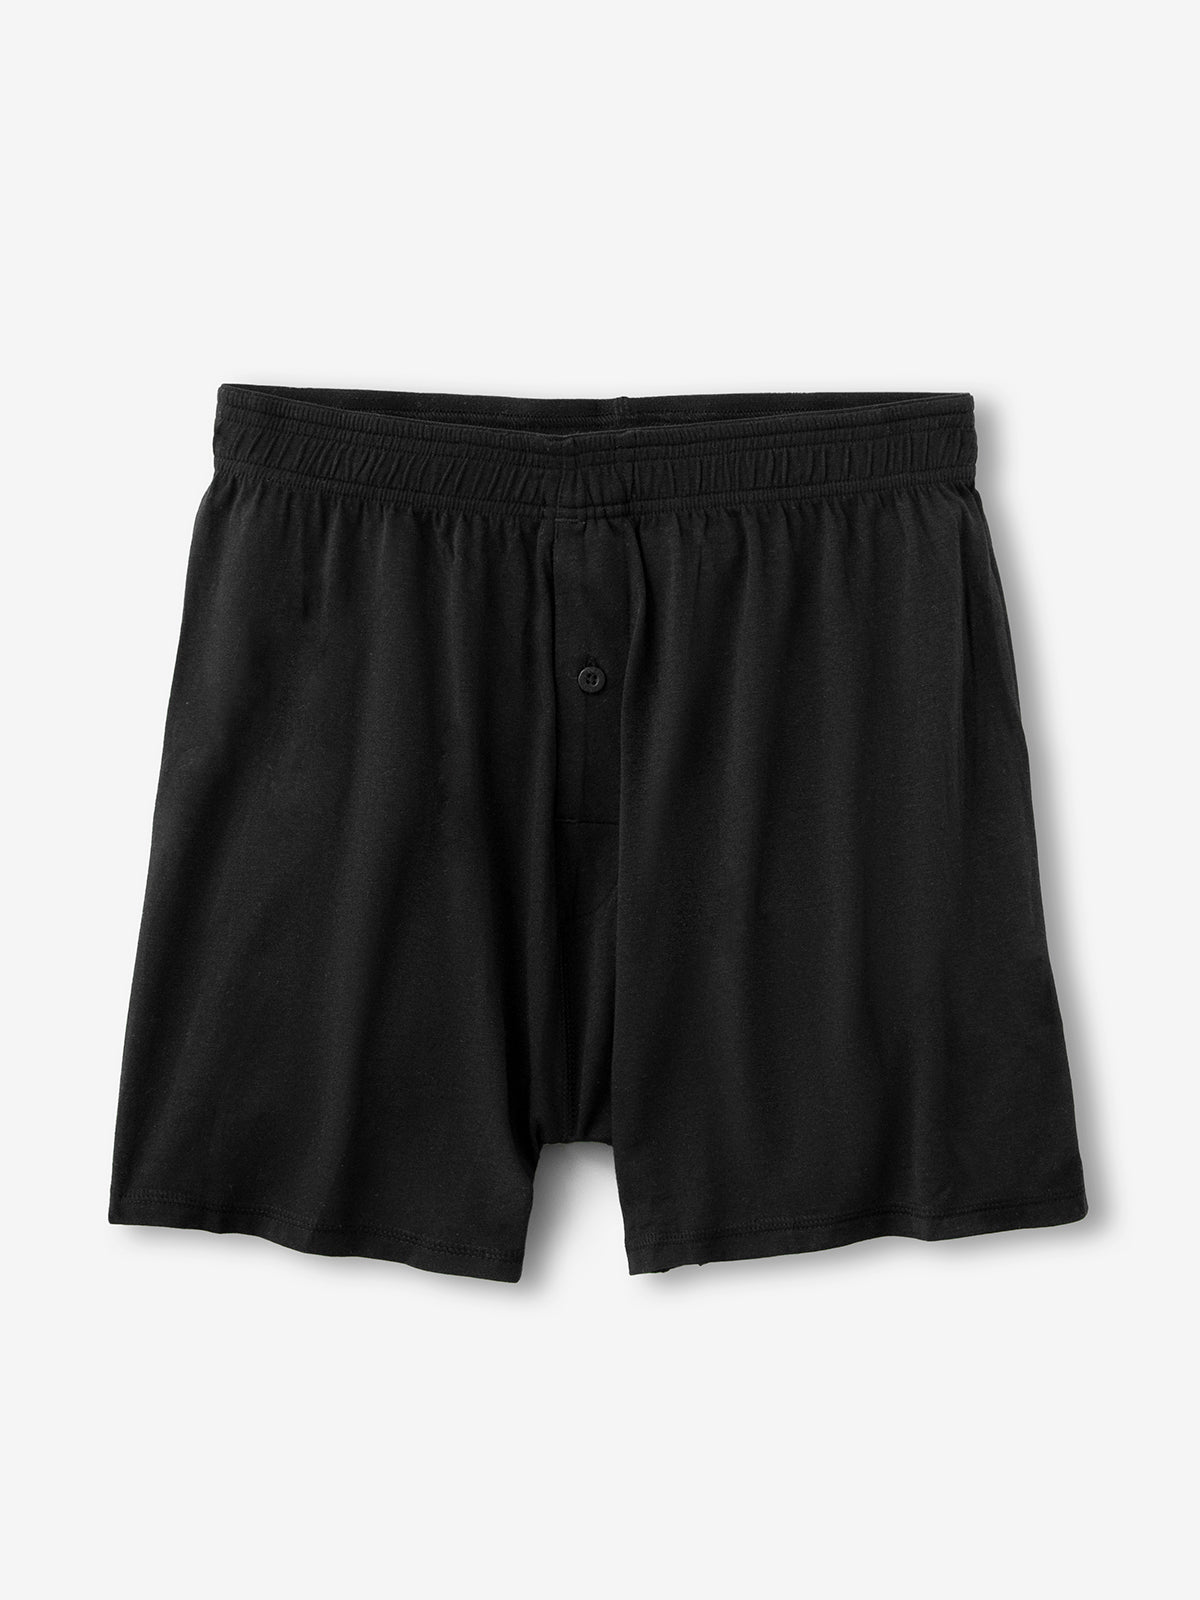 Cottonique Men's Drawstring Loose Boxer Shorts (2XL/3XL, Black) :  : Clothing, Shoes & Accessories